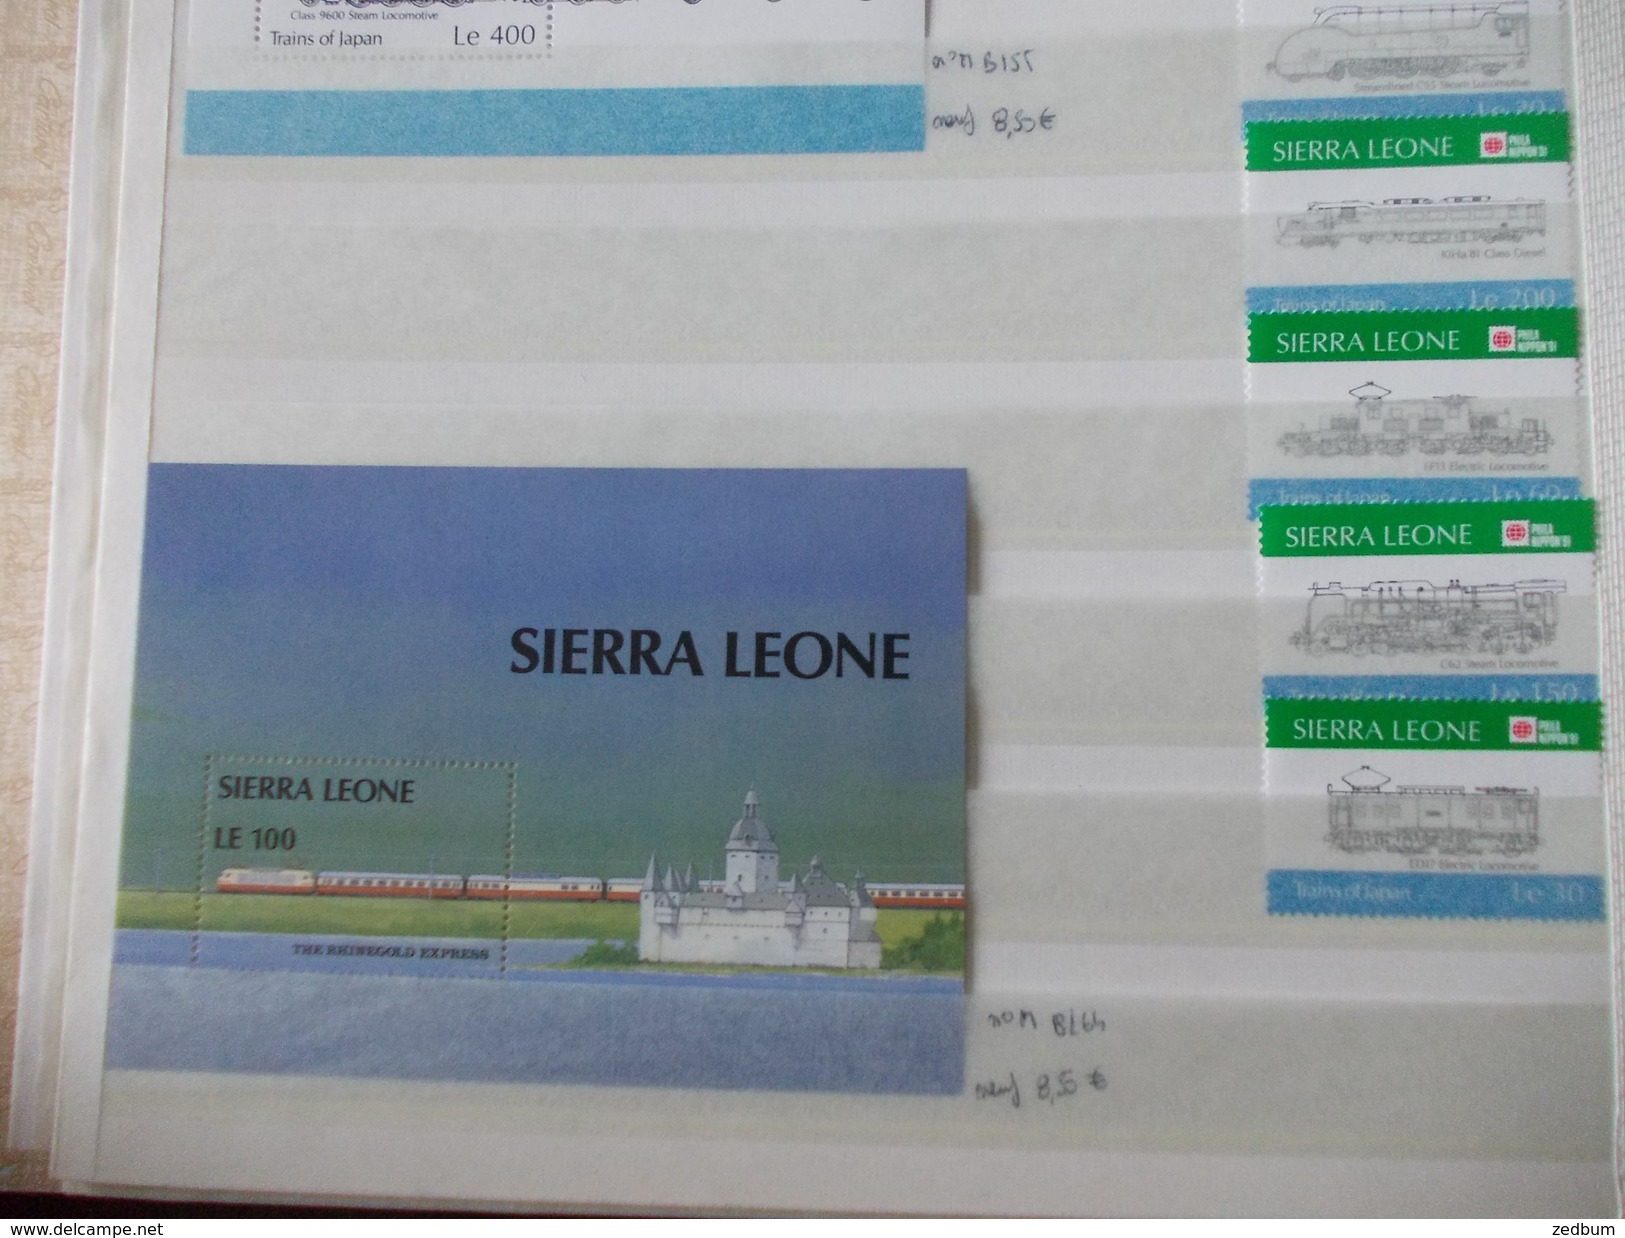 ALBUM 9 collection de timbres avec pour thème le chemin de fer train de tout pays valeur 510.20 &euro;